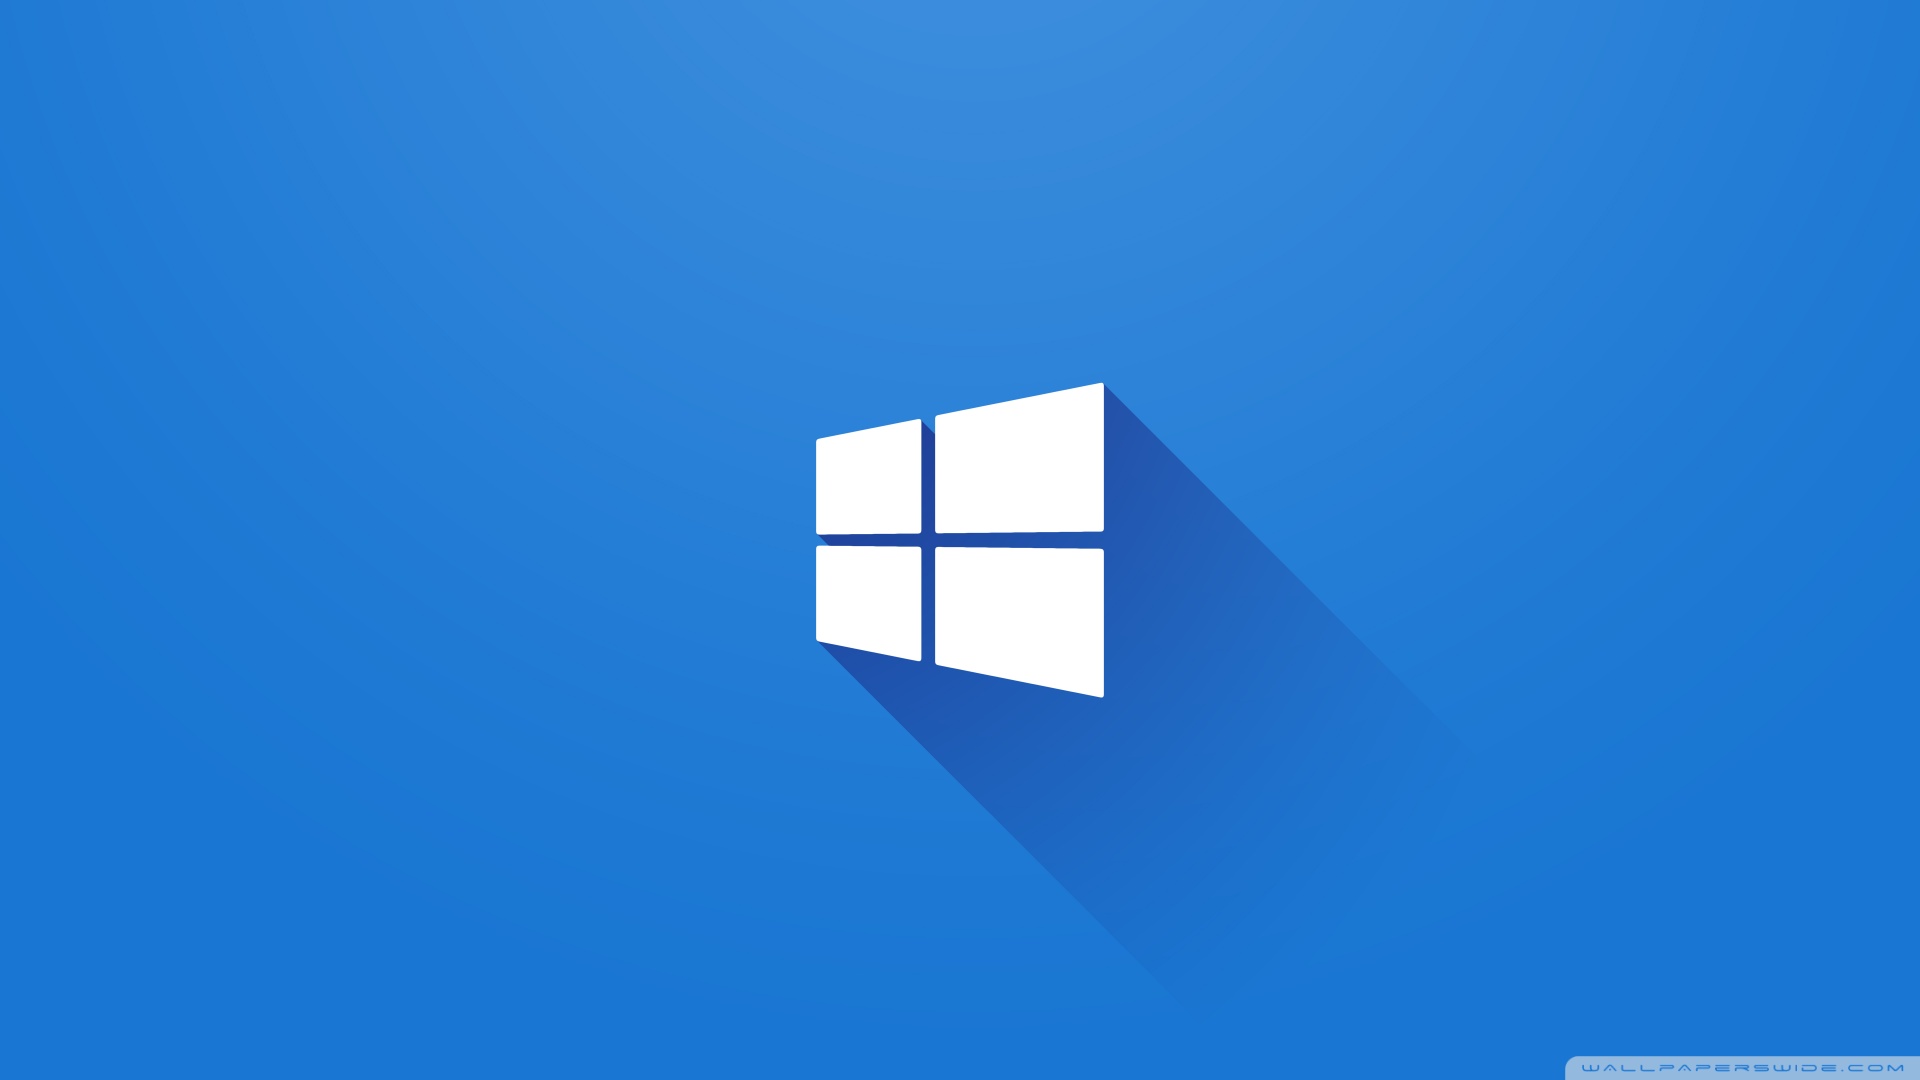 Quản lý hình nền trên Windows 10 giúp bạn thay đổi hình nền dễ dàng hơn bao giờ hết. Với tính năng quản lý tập tin và đa dạng các chế độ xem, bạn sẽ không bao giờ phải khó chịu với việc lựa chọn hình nền cho thiết bị của mình.